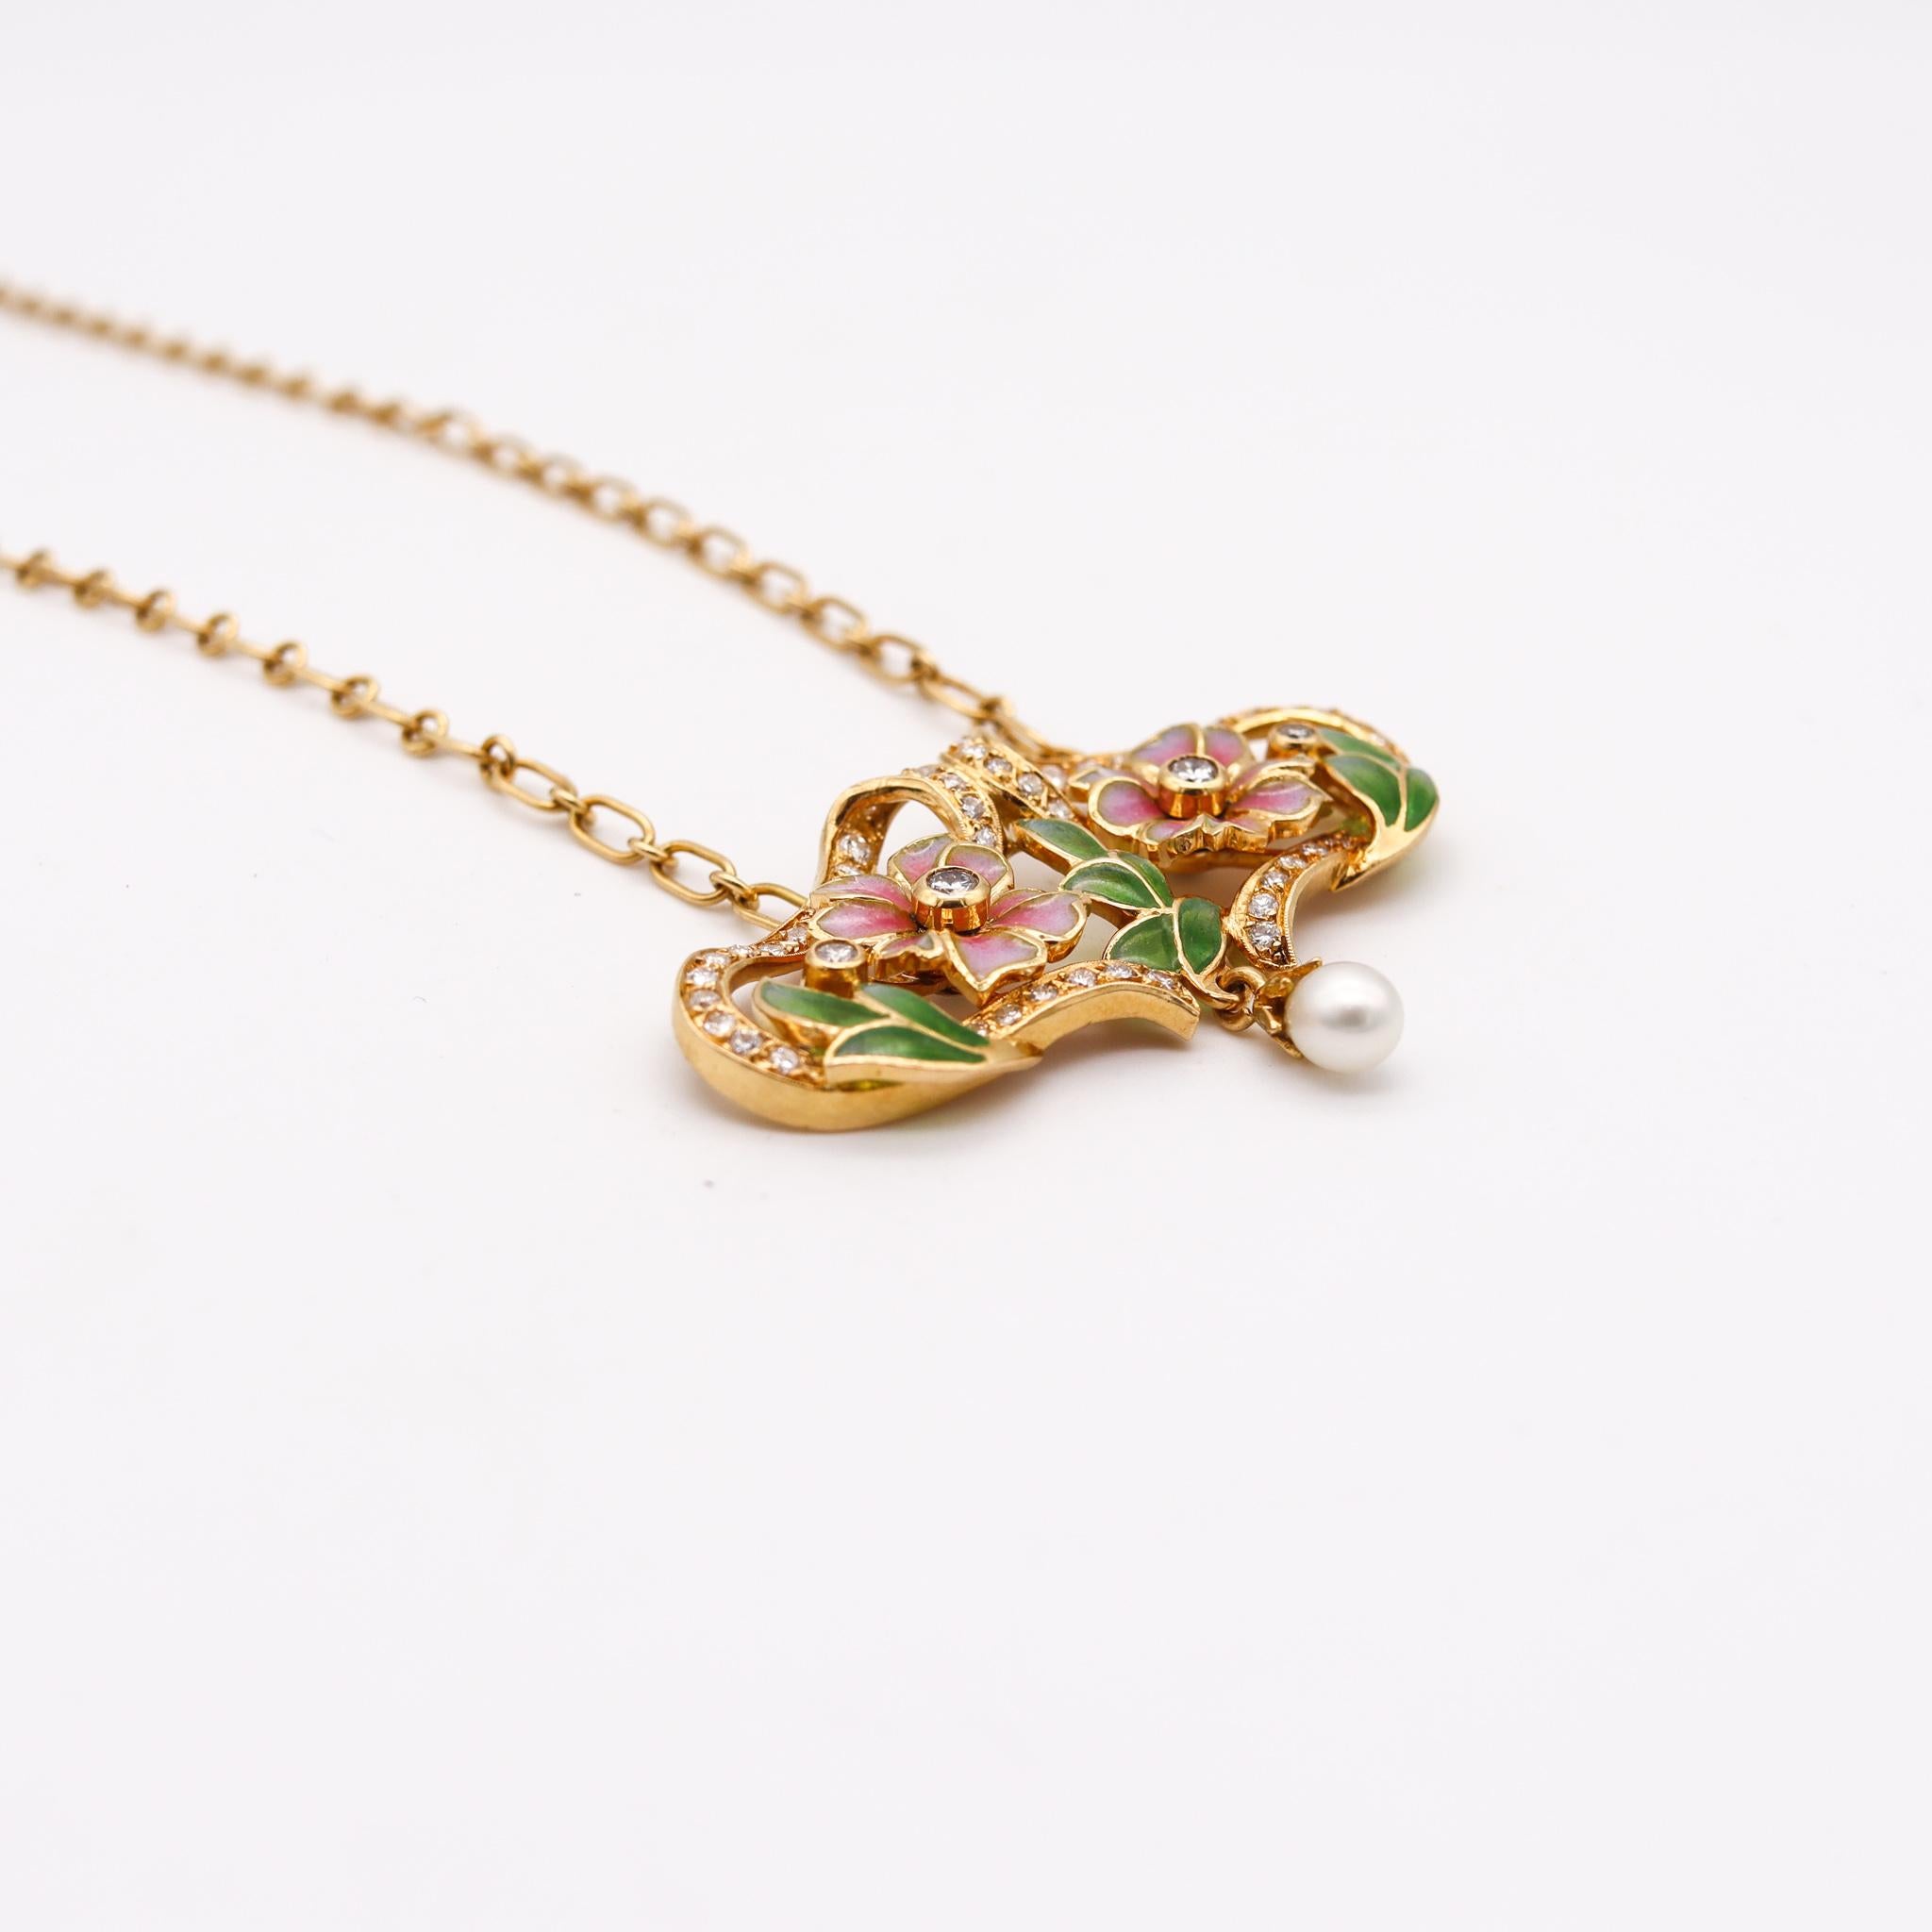 Brilliant Cut Masriera Art Nouveau Plique à Jour Enamel Necklace in 18Kt Yellow Gold & Diamond